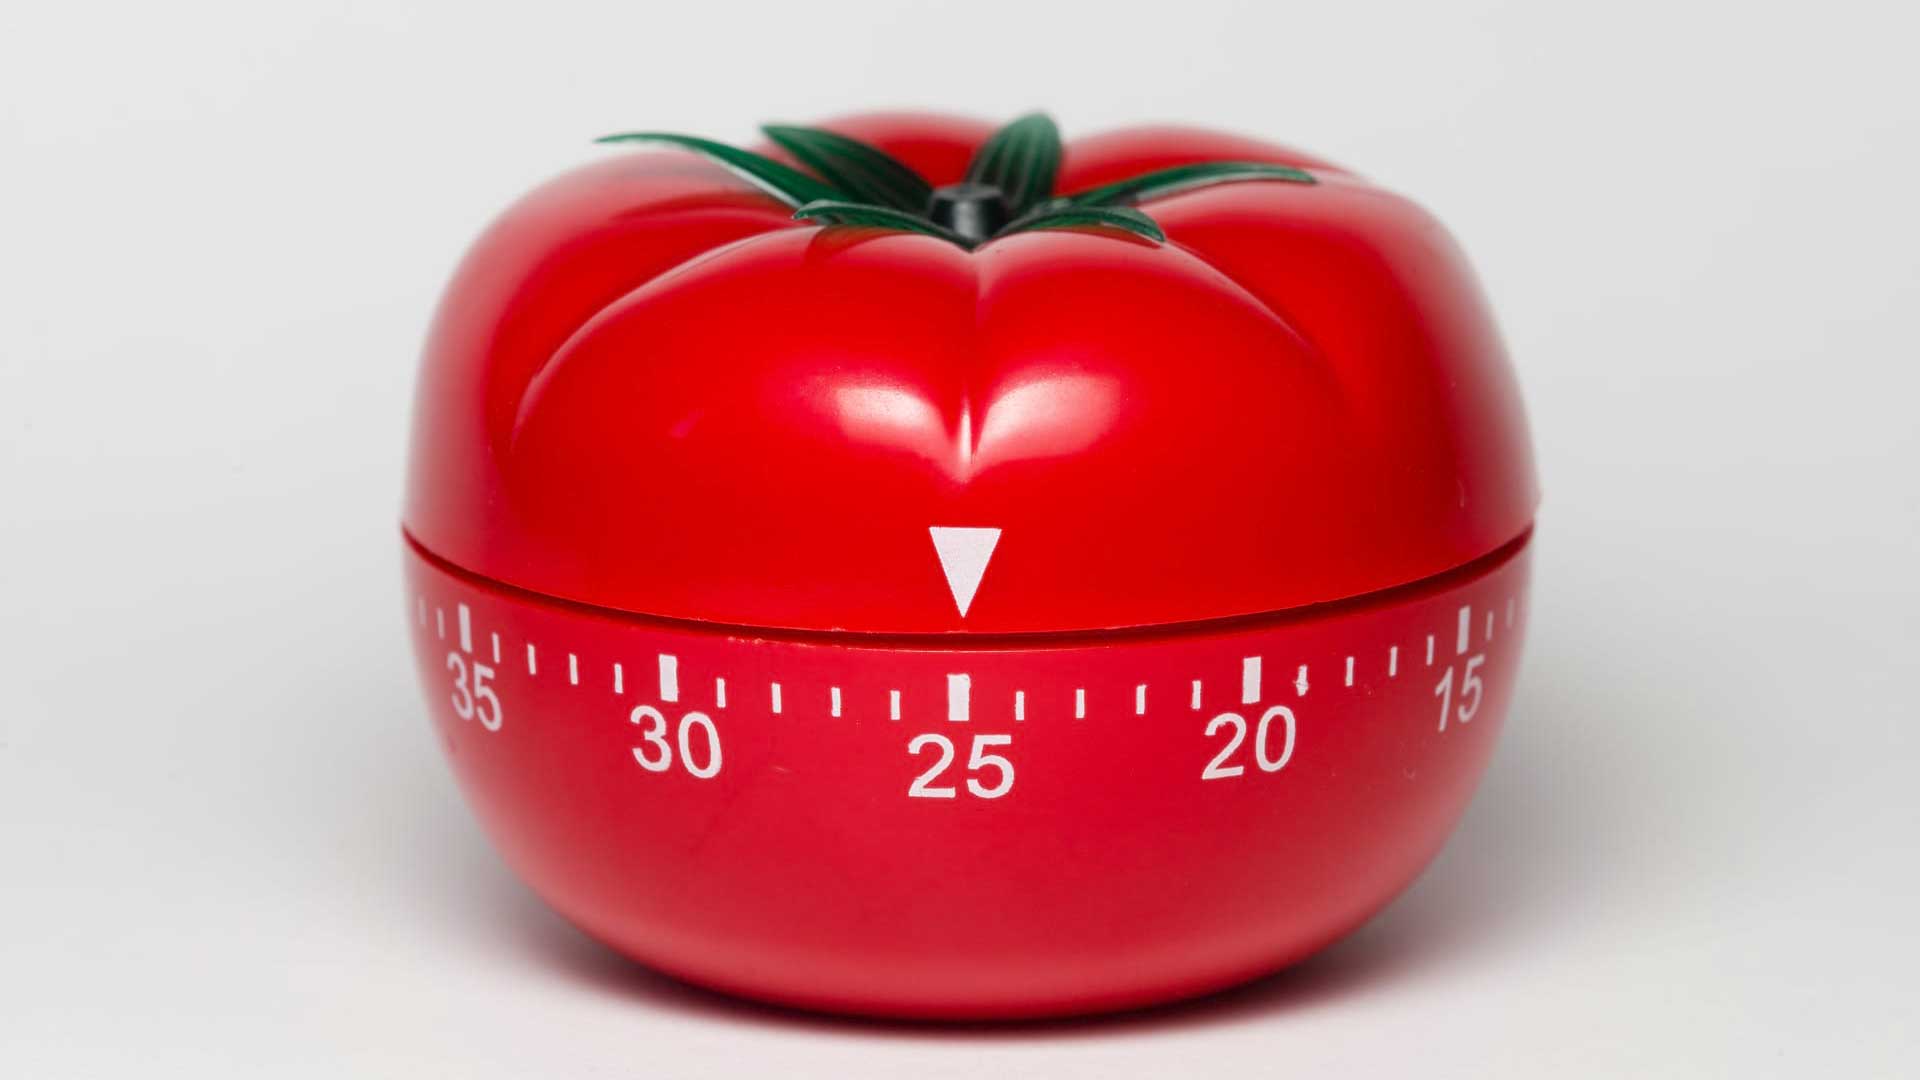 A pomodoro tomato timer set to 25 minutes.